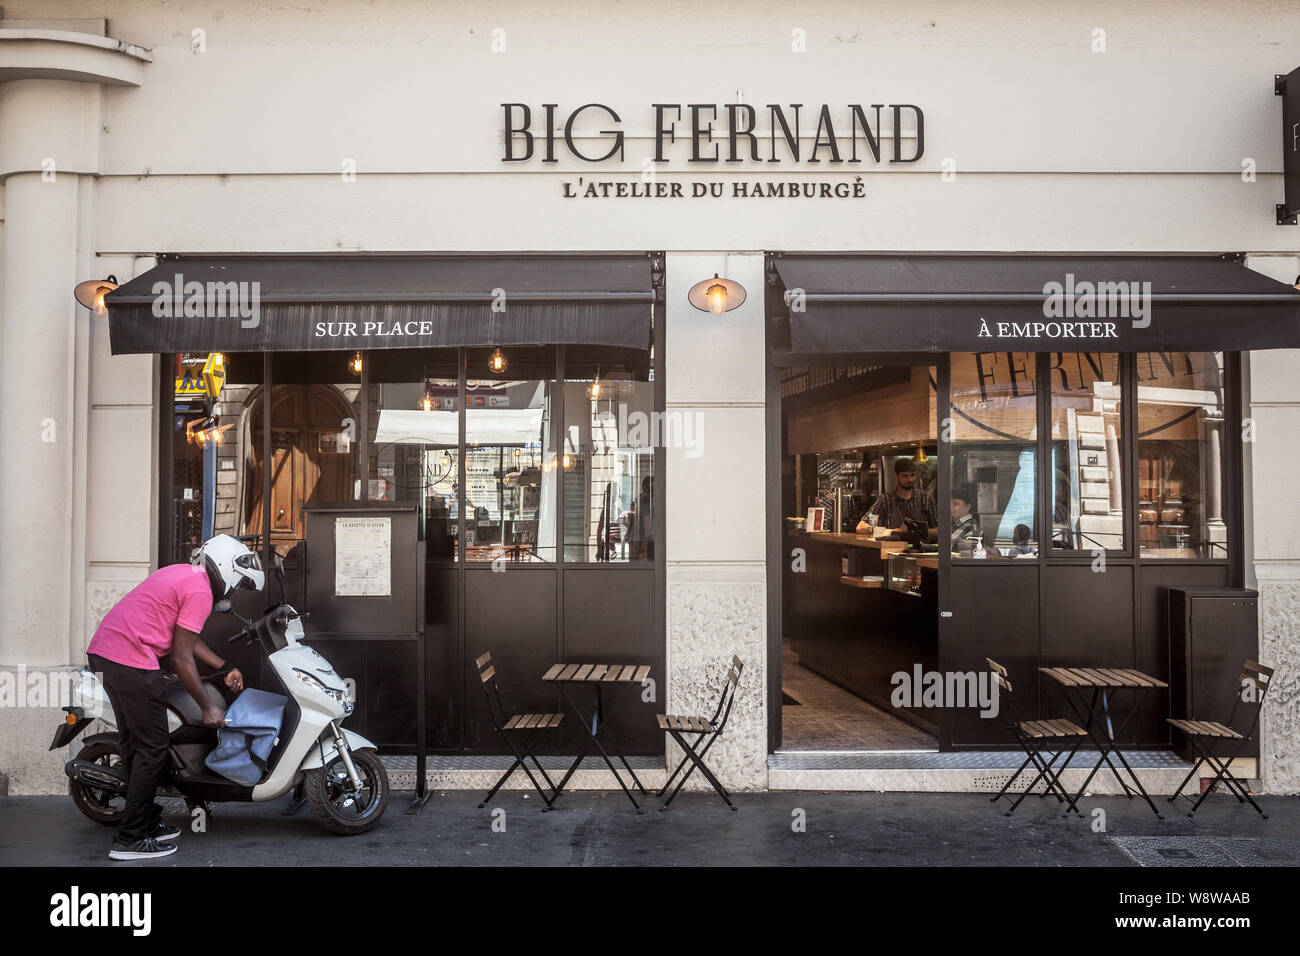 Lione, Francia - 14 luglio 2019: Grande Fernand logo nella parte anteriore del loro locale ristorante atelier. Grande Fernand è una catena francese di Hamburger fast foods sprea Foto Stock